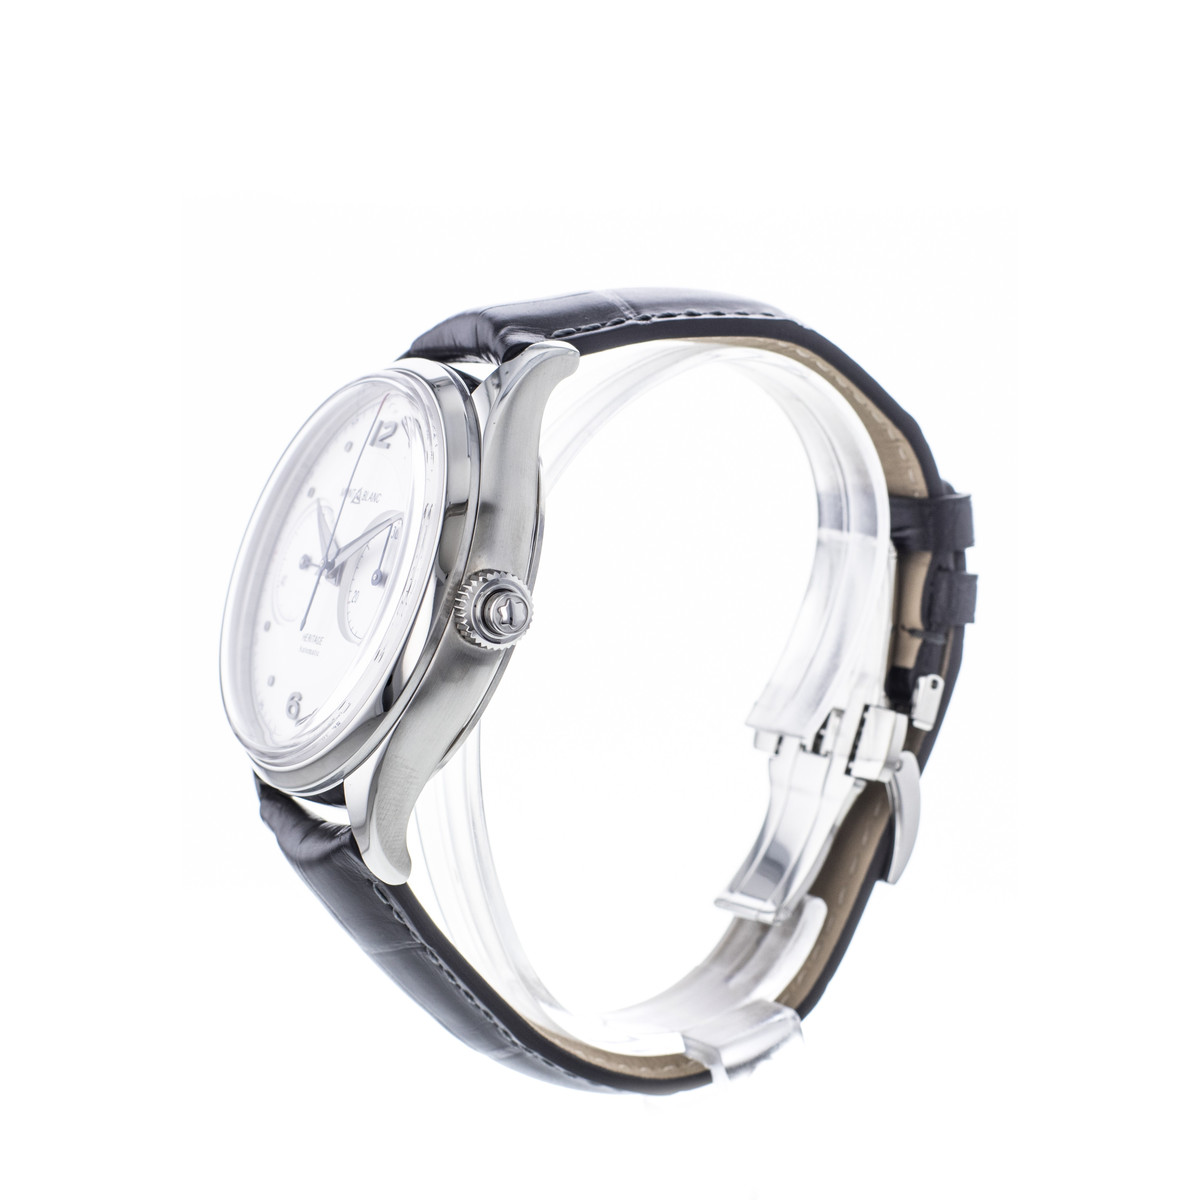 Montre d'occasion Montblanc Heritage homme chronographe automatique acier bracelet cuir noir - vue D3